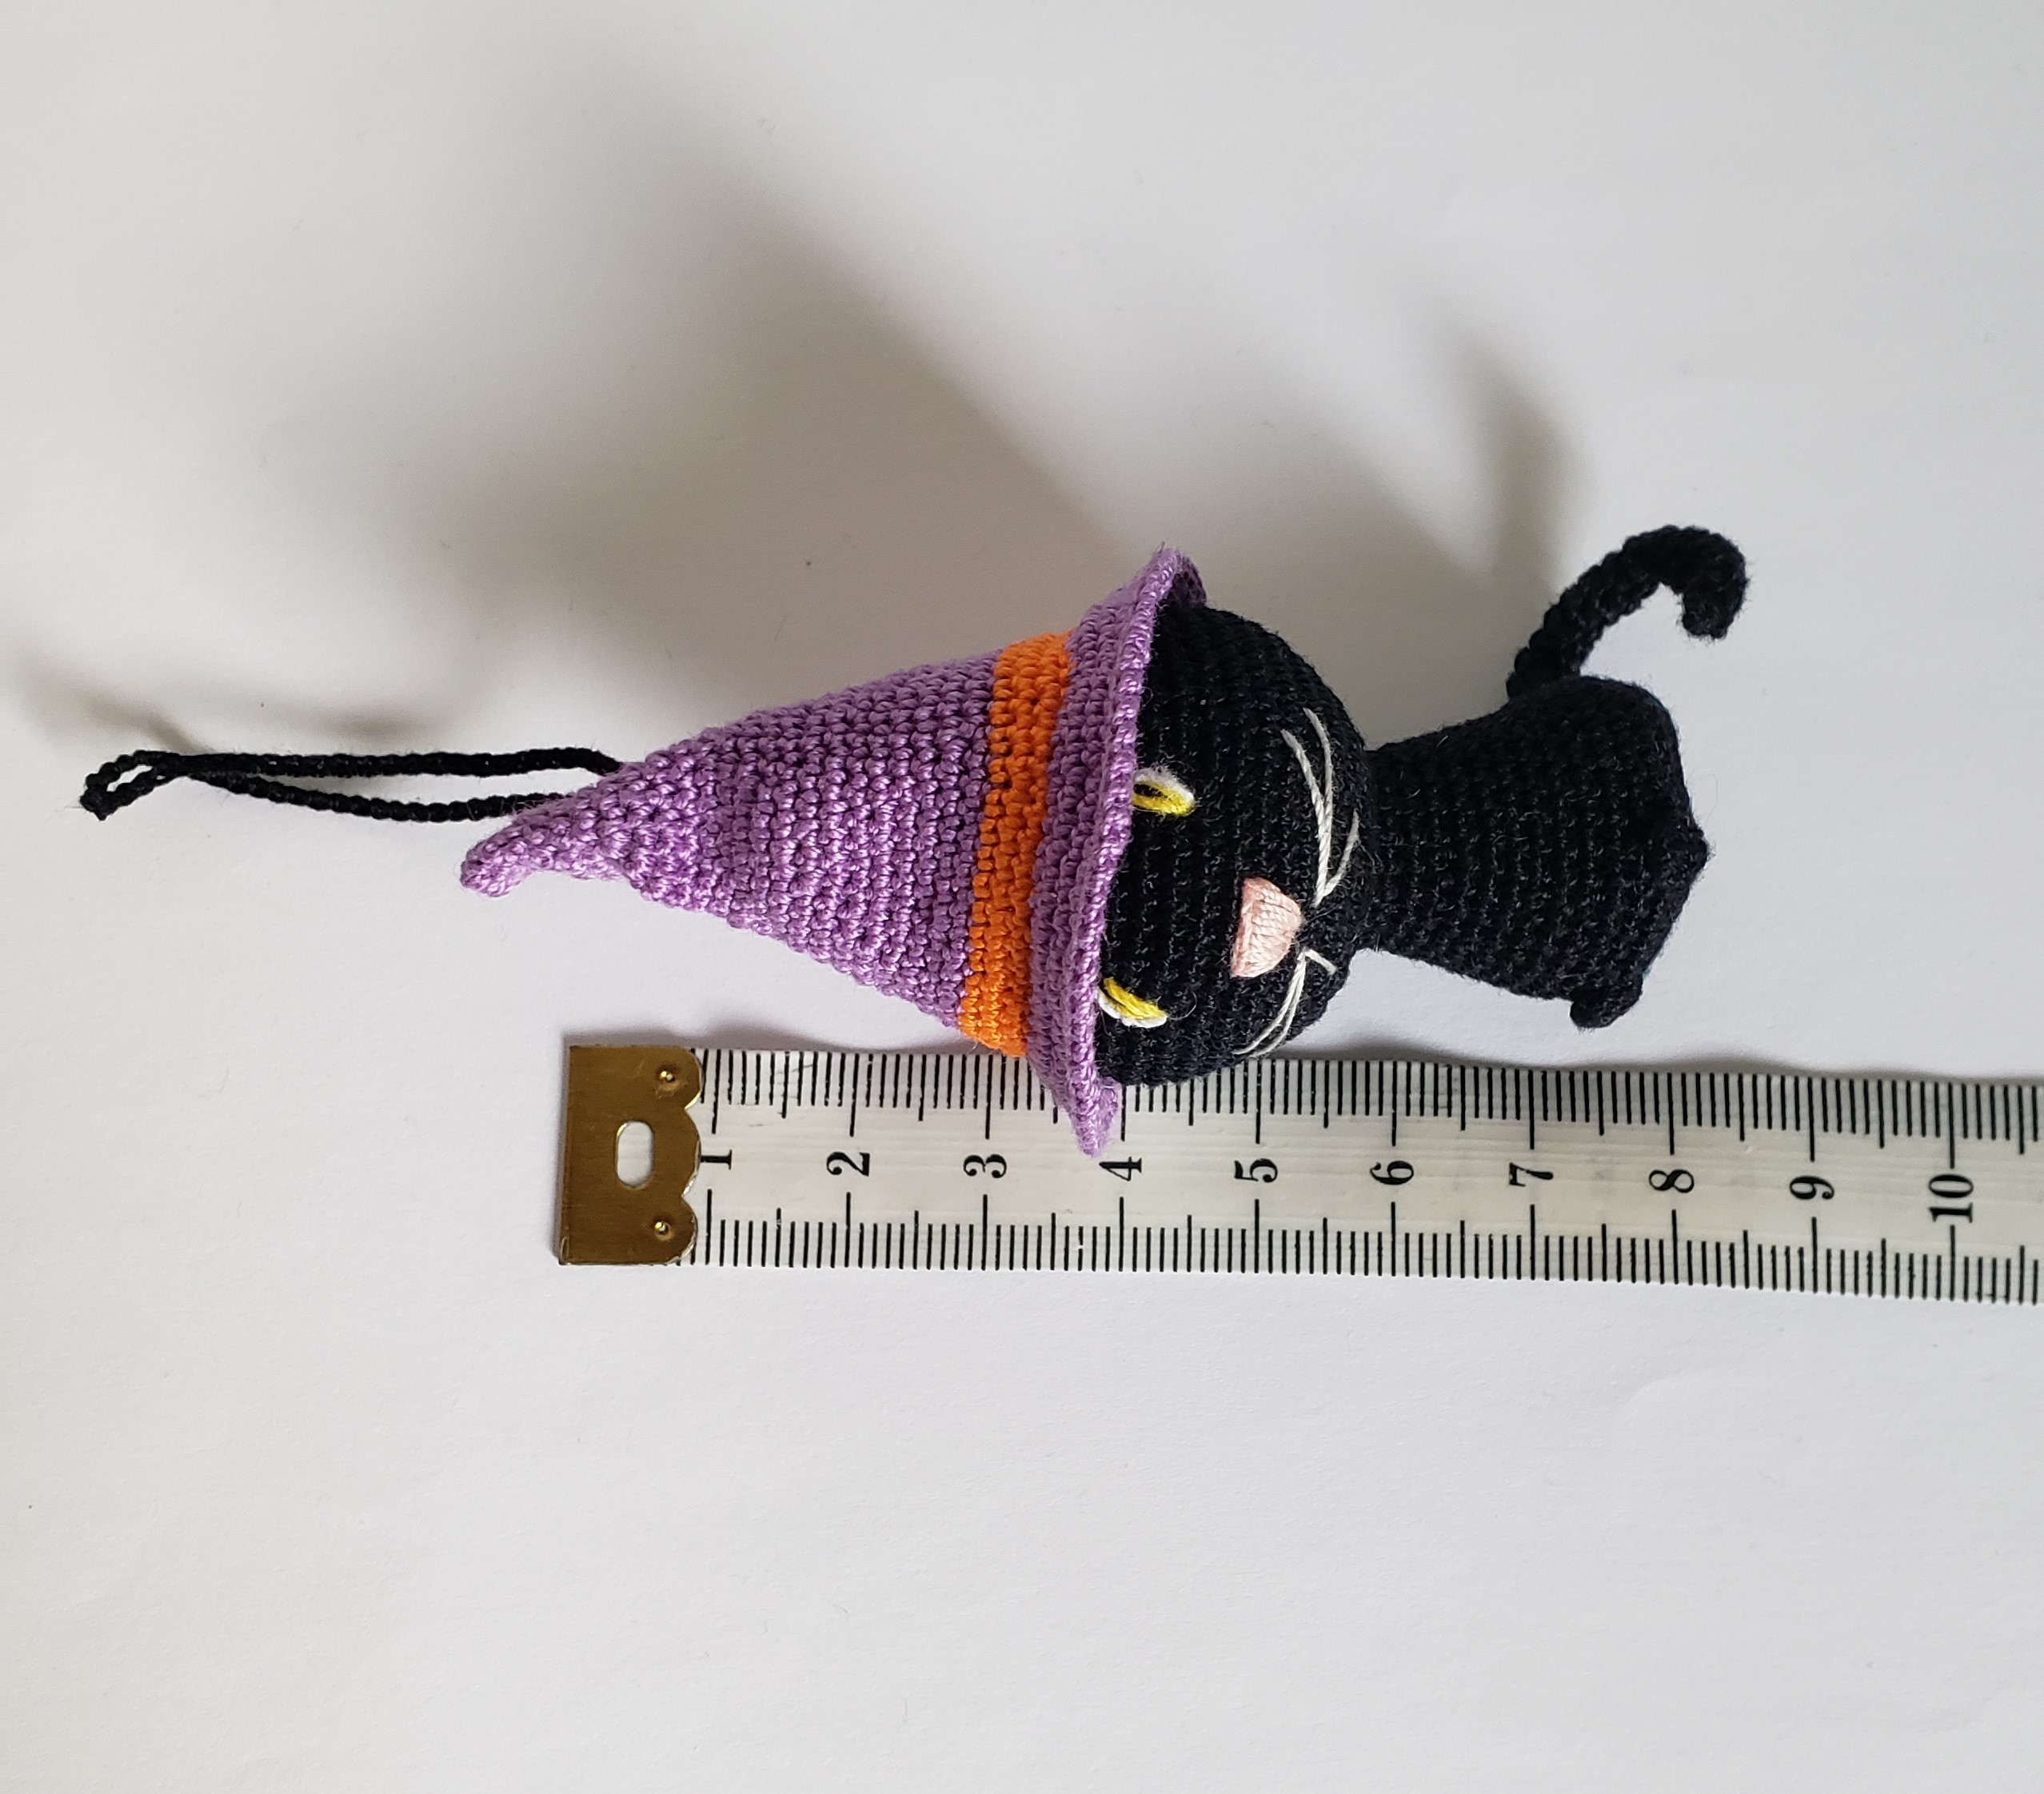 chat marron amigurumi kawaii yeux verts avec attache pour porte clés au  crochet, Miniature Amigurumi cadeau artisanal